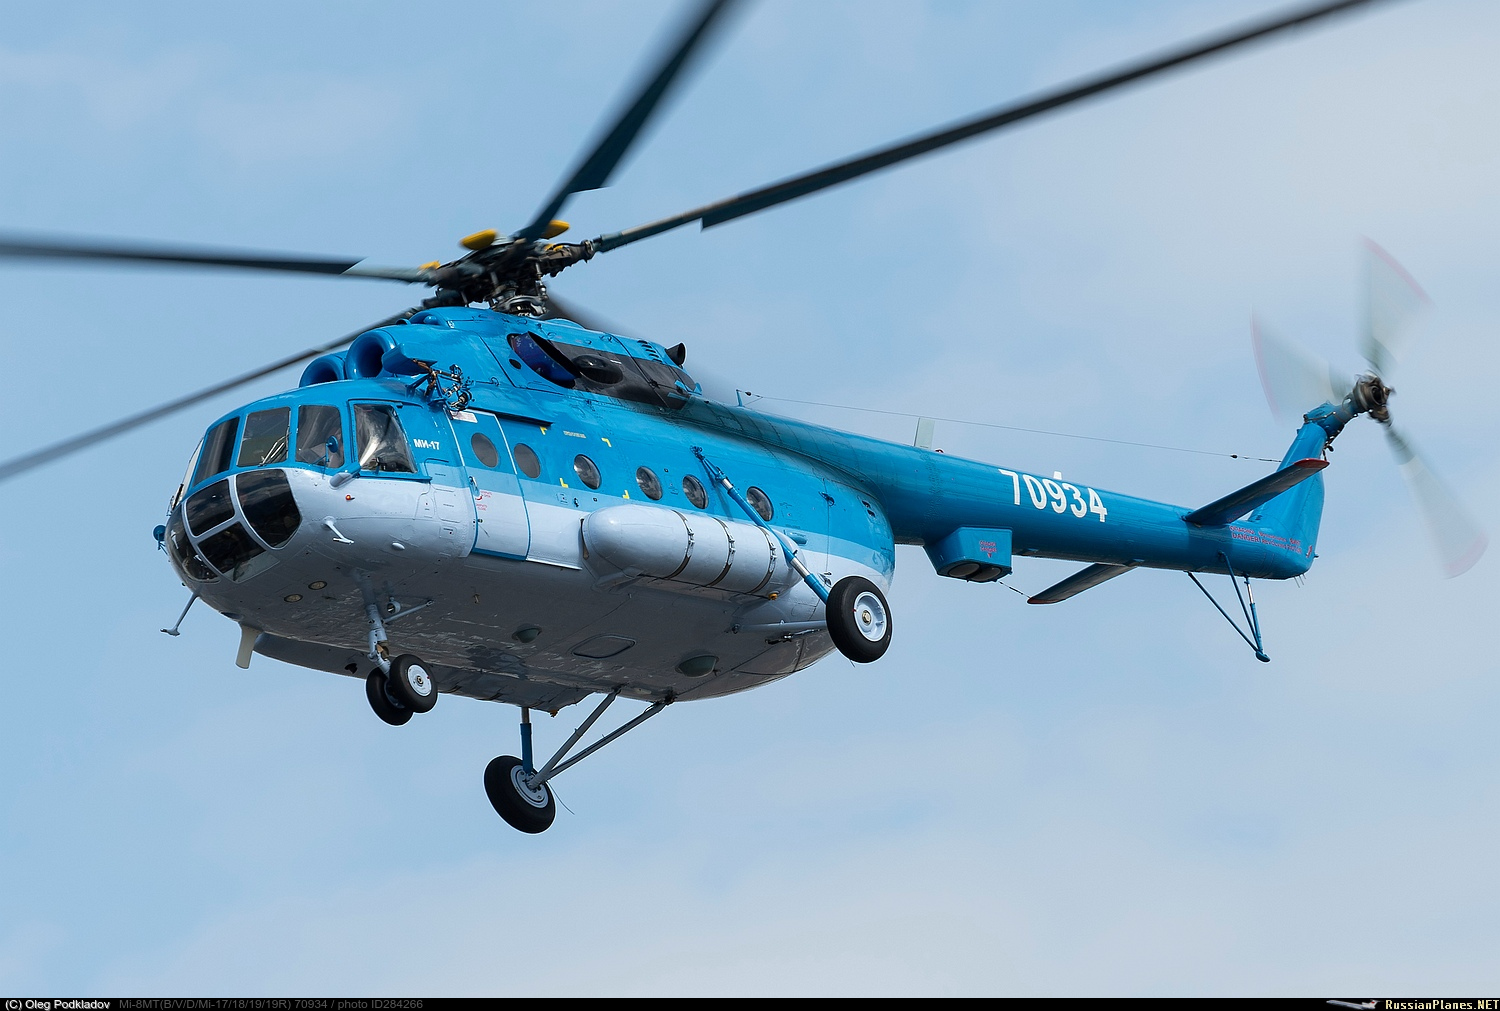 Mi-17   70934